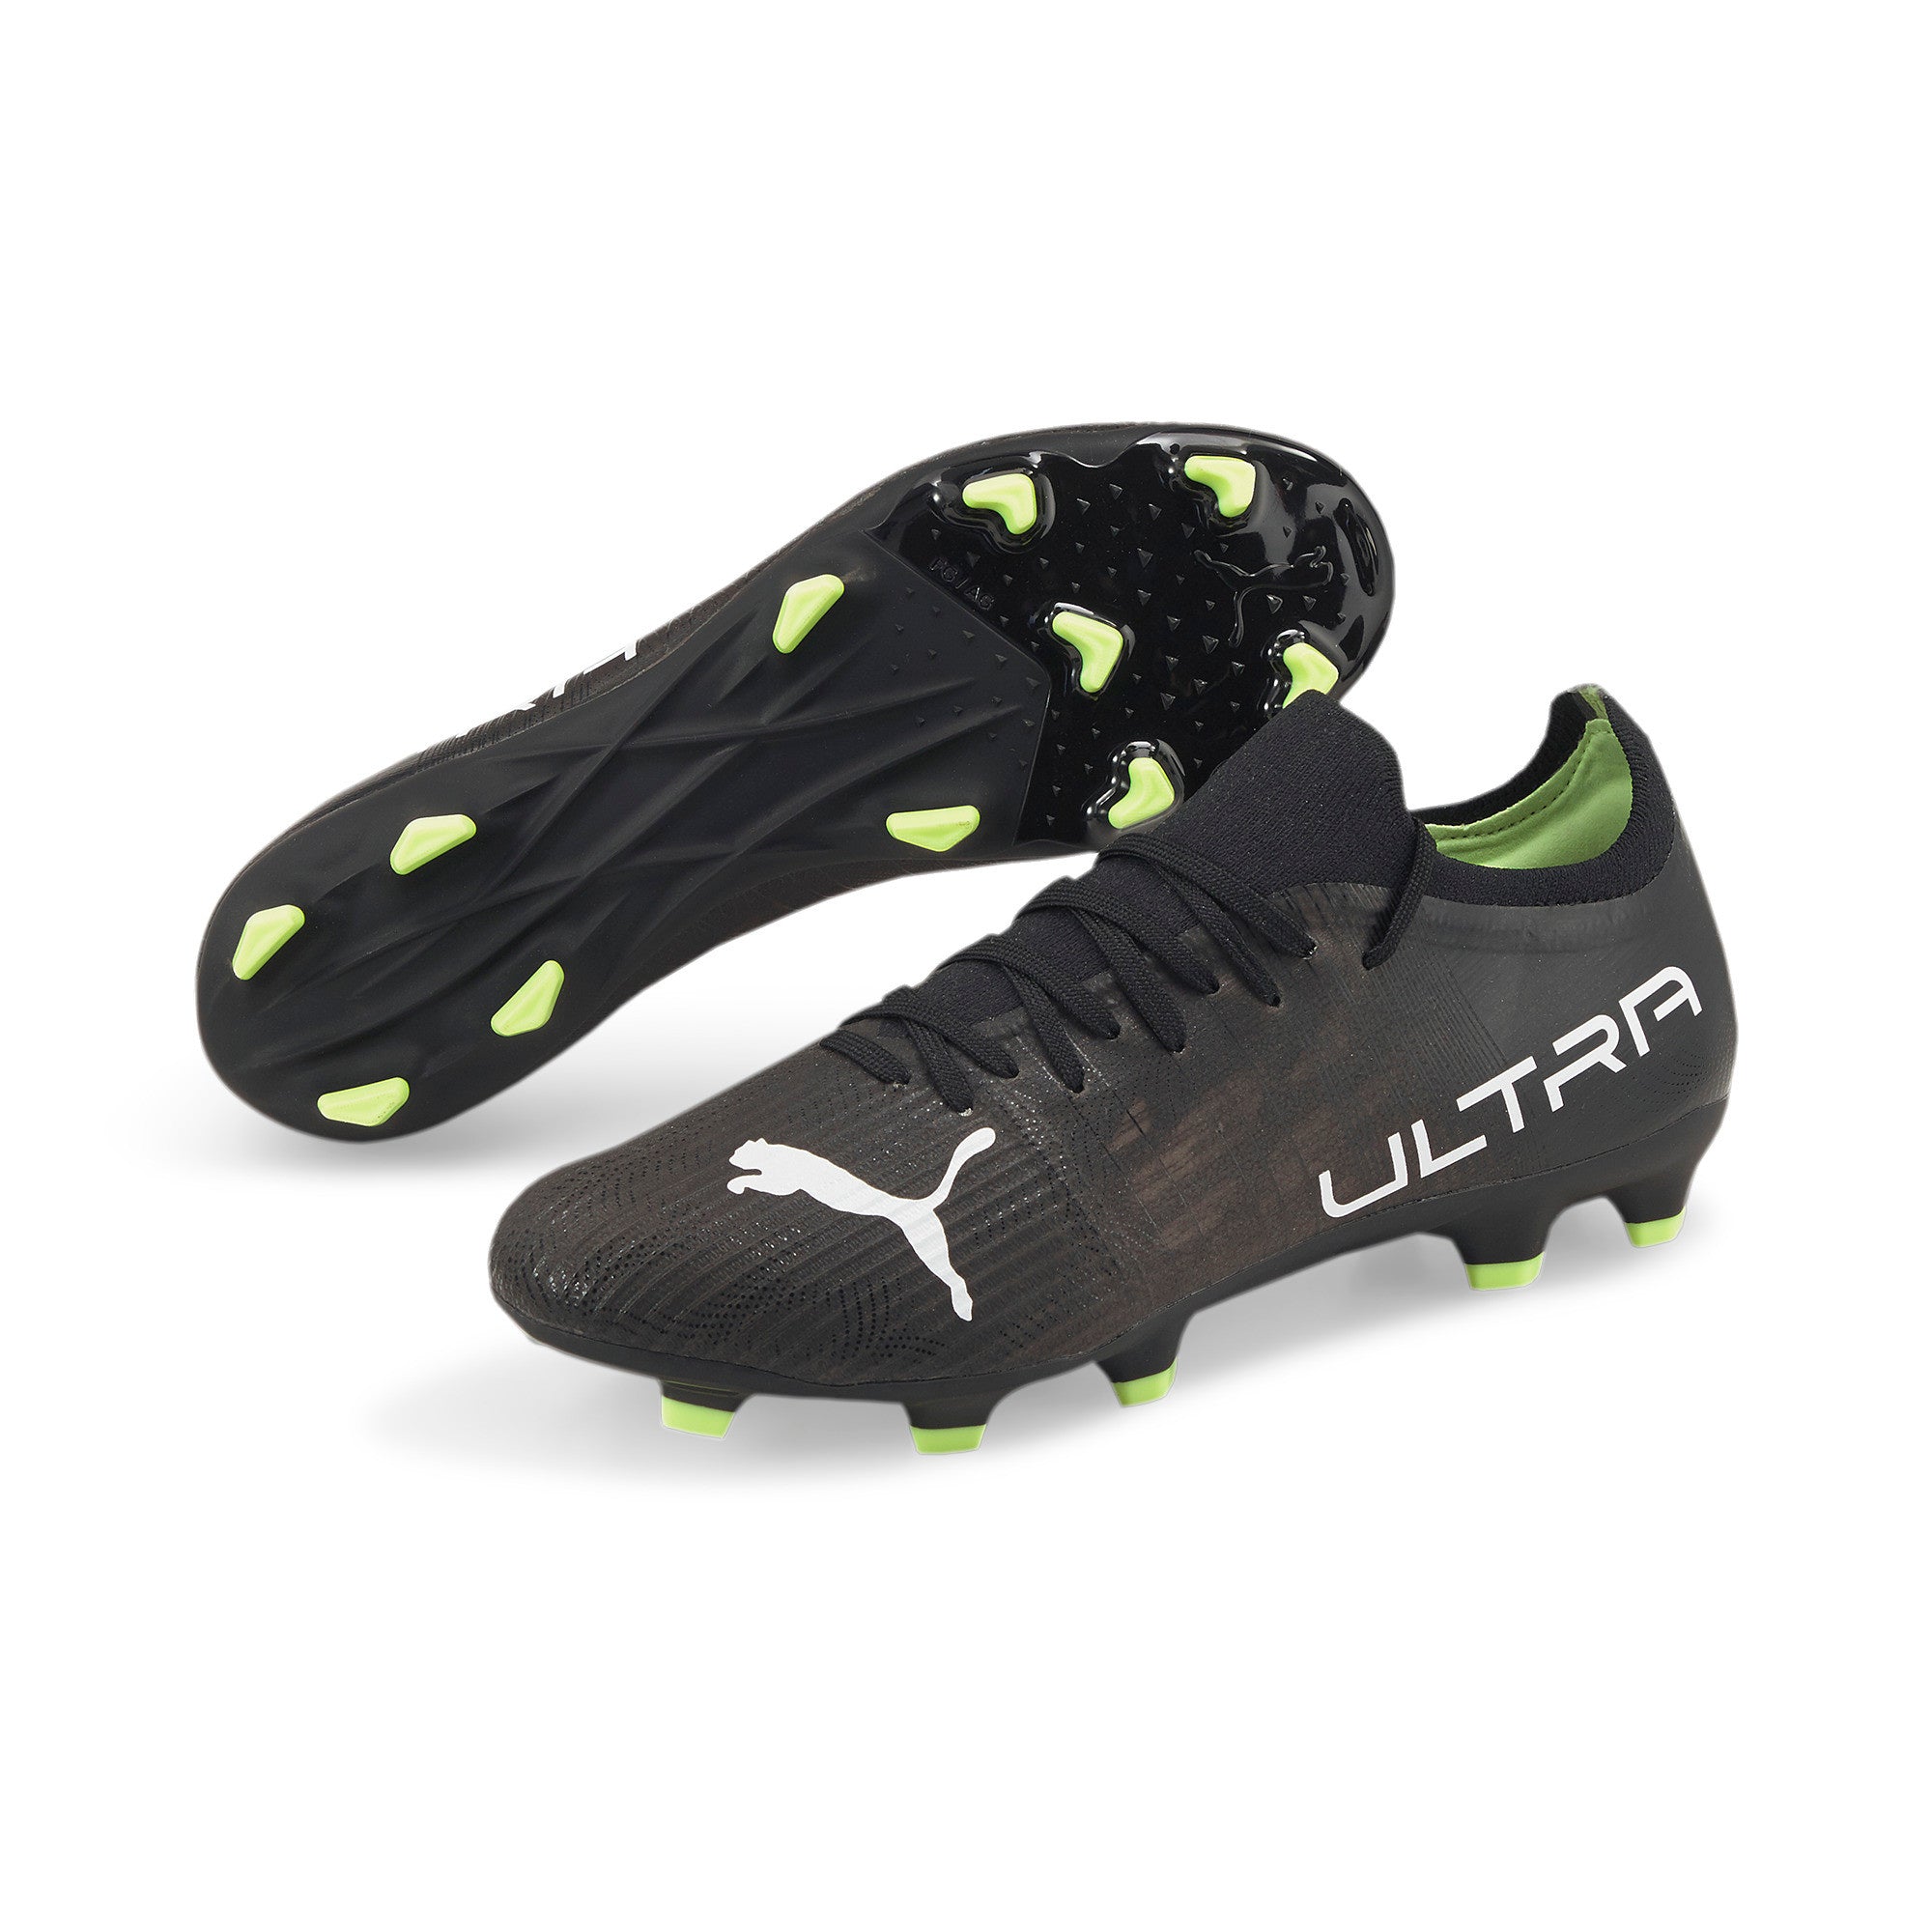 ULTRA 3.4 IT Men's Soccer Cleats